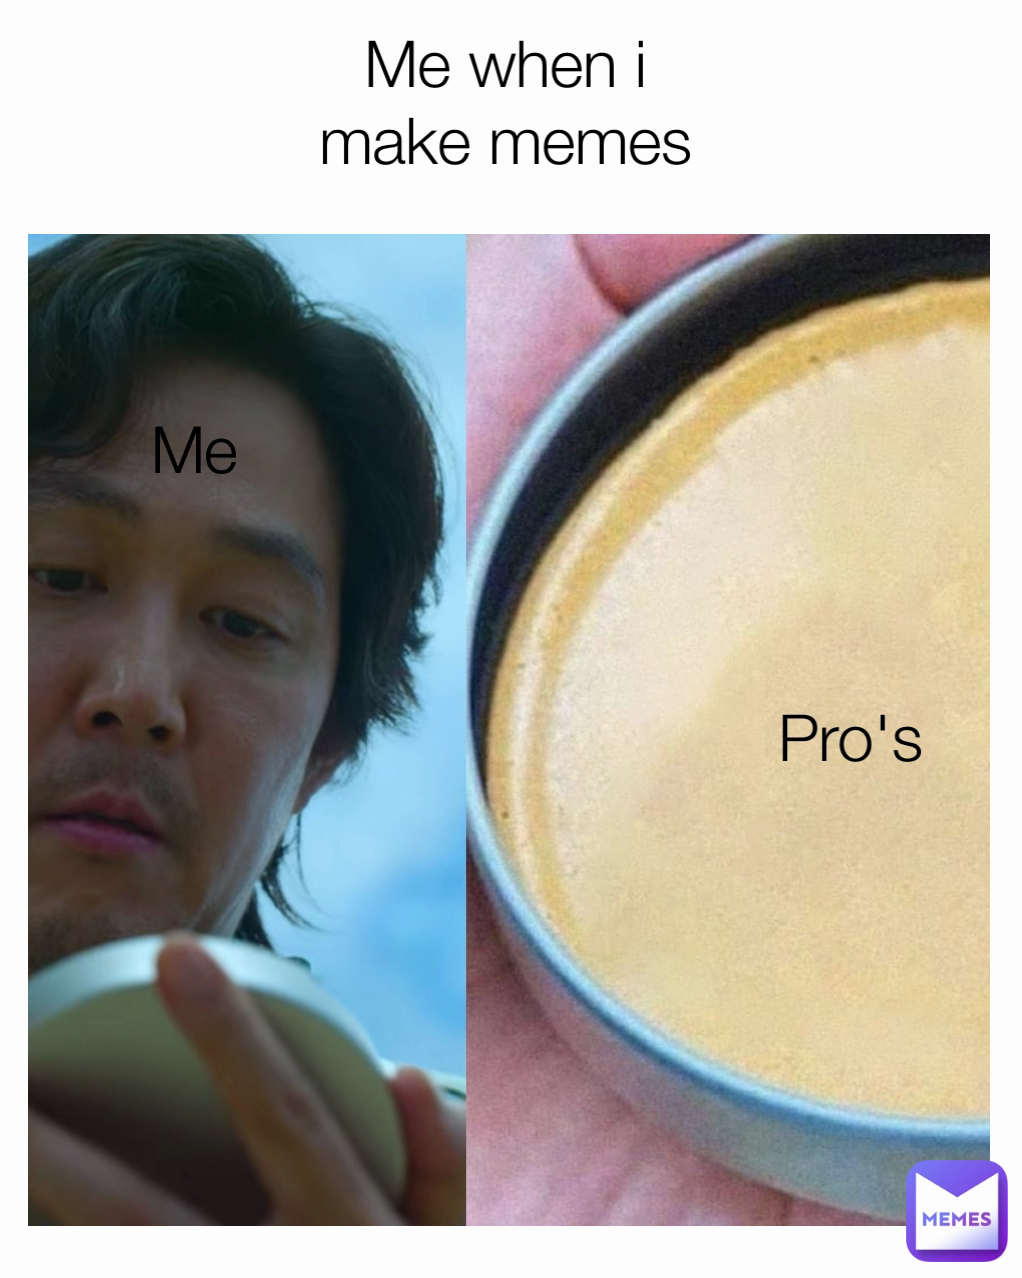 Me Me when i make memes Pro's